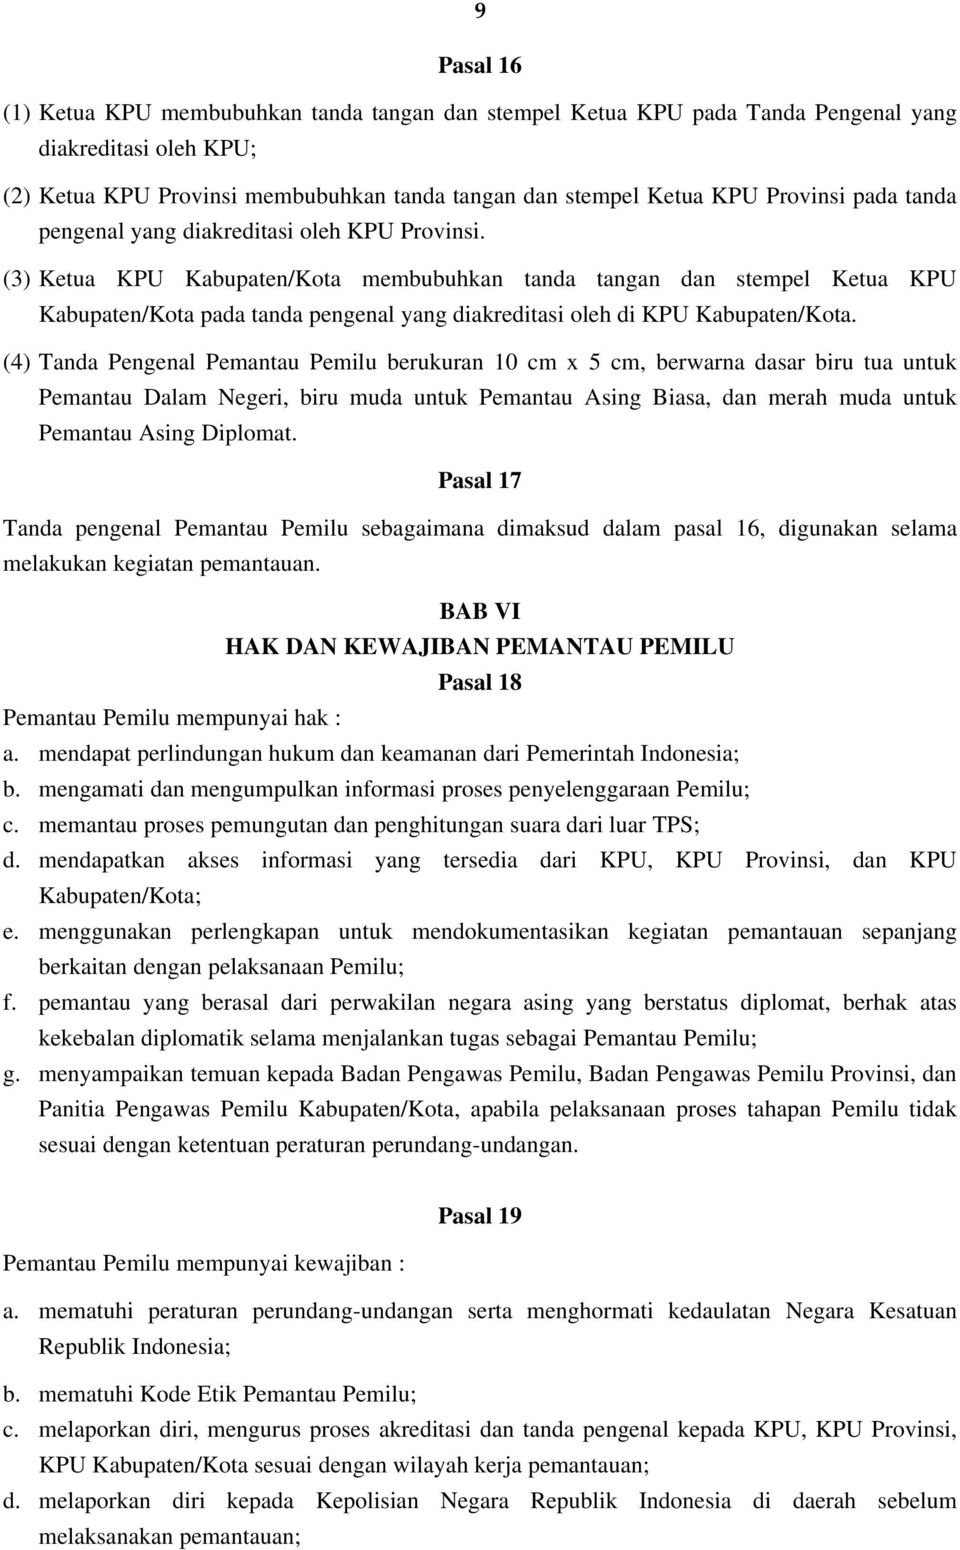 (3) Ketua KPU Kabupaten/Kota membubuhkan tanda tangan dan stempel Ketua KPU Kabupaten/Kota pada tanda pengenal yang diakreditasi oleh di KPU Kabupaten/Kota.